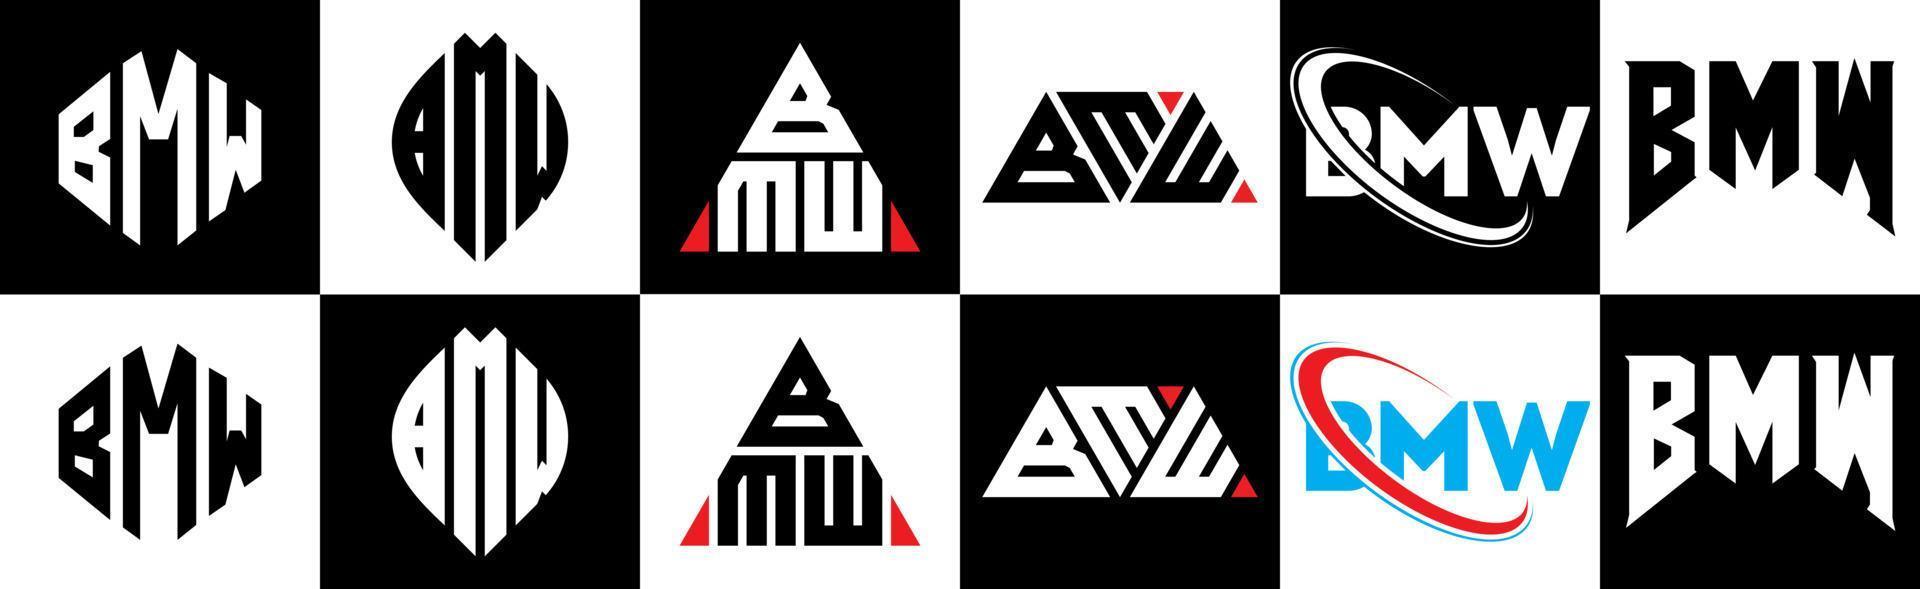 création de logo de lettre bmw en six styles. polygone bmw, cercle, triangle, hexagone, style plat et simple avec logo de lettre de variation de couleur noir et blanc dans un plan de travail. logo minimaliste et classique bmw vecteur